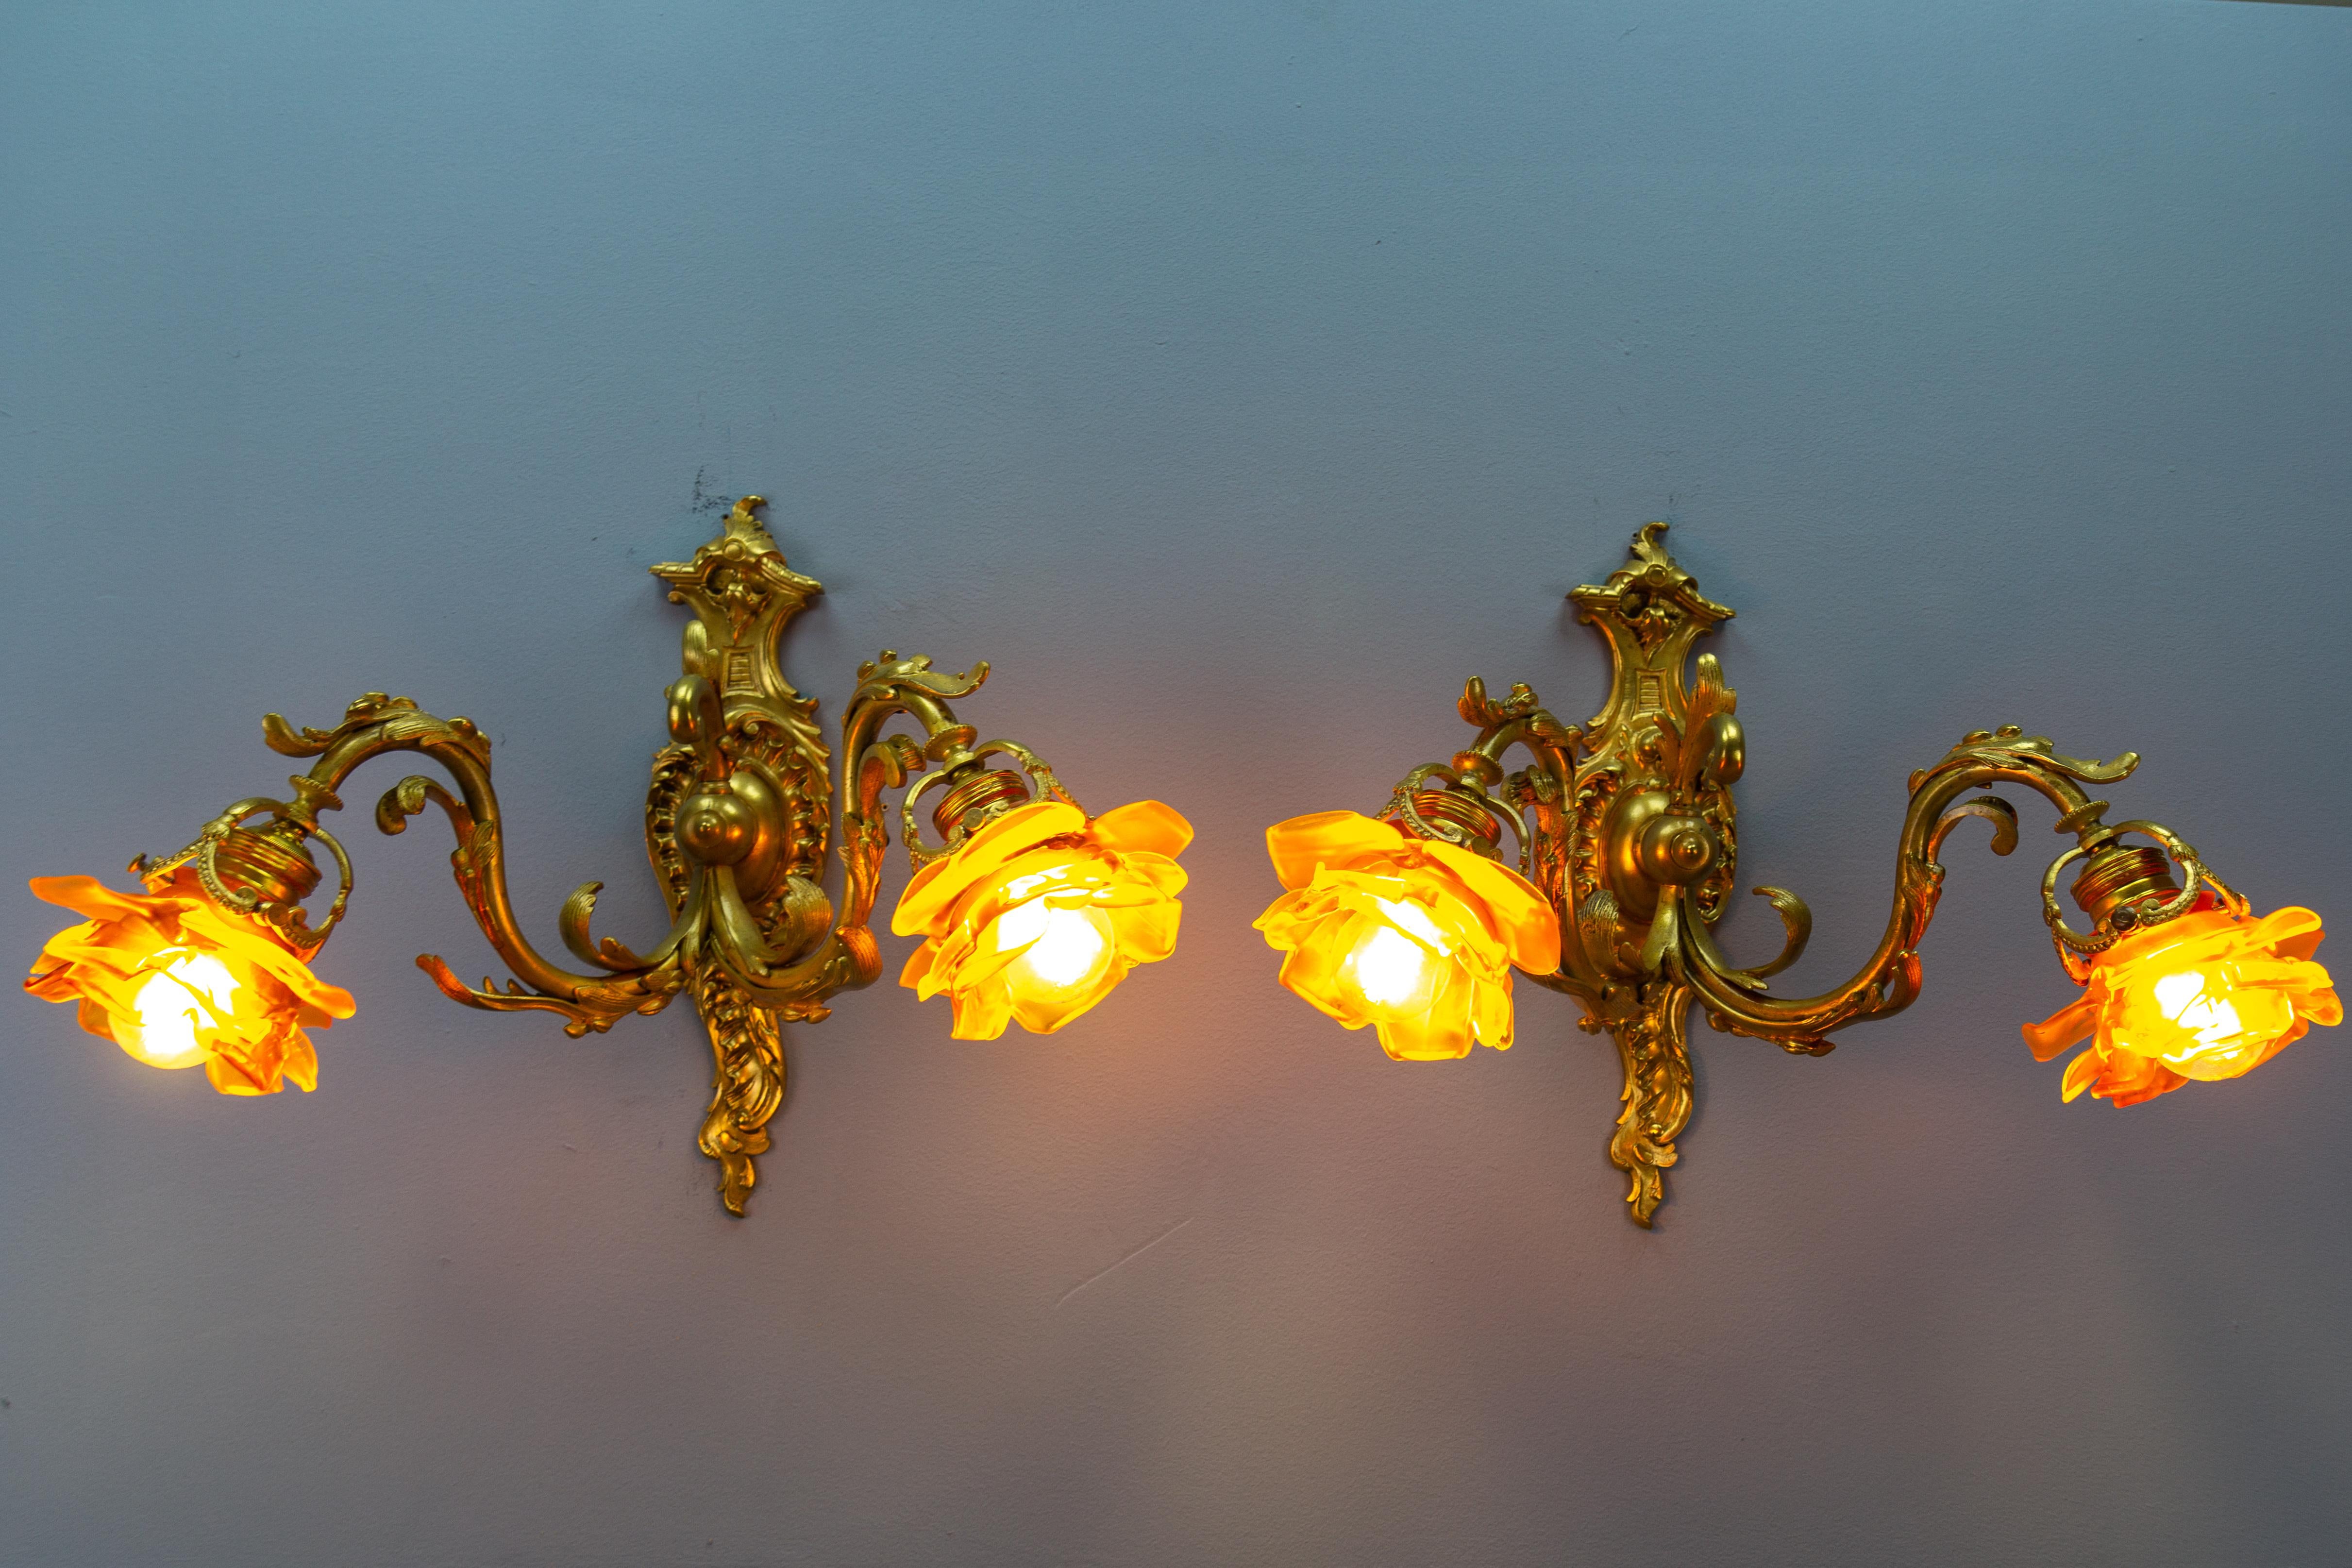 Ein Paar französischer Doppelarmleuchter aus Bronze und braunem Glas im Louis XV-Stil von ca. 1900.
Diese großen, beeindruckenden Wandleuchter im Stil Ludwigs XV. oder des Rokoko sind mit Bronzearmen und einer Rückwand mit charakteristischem